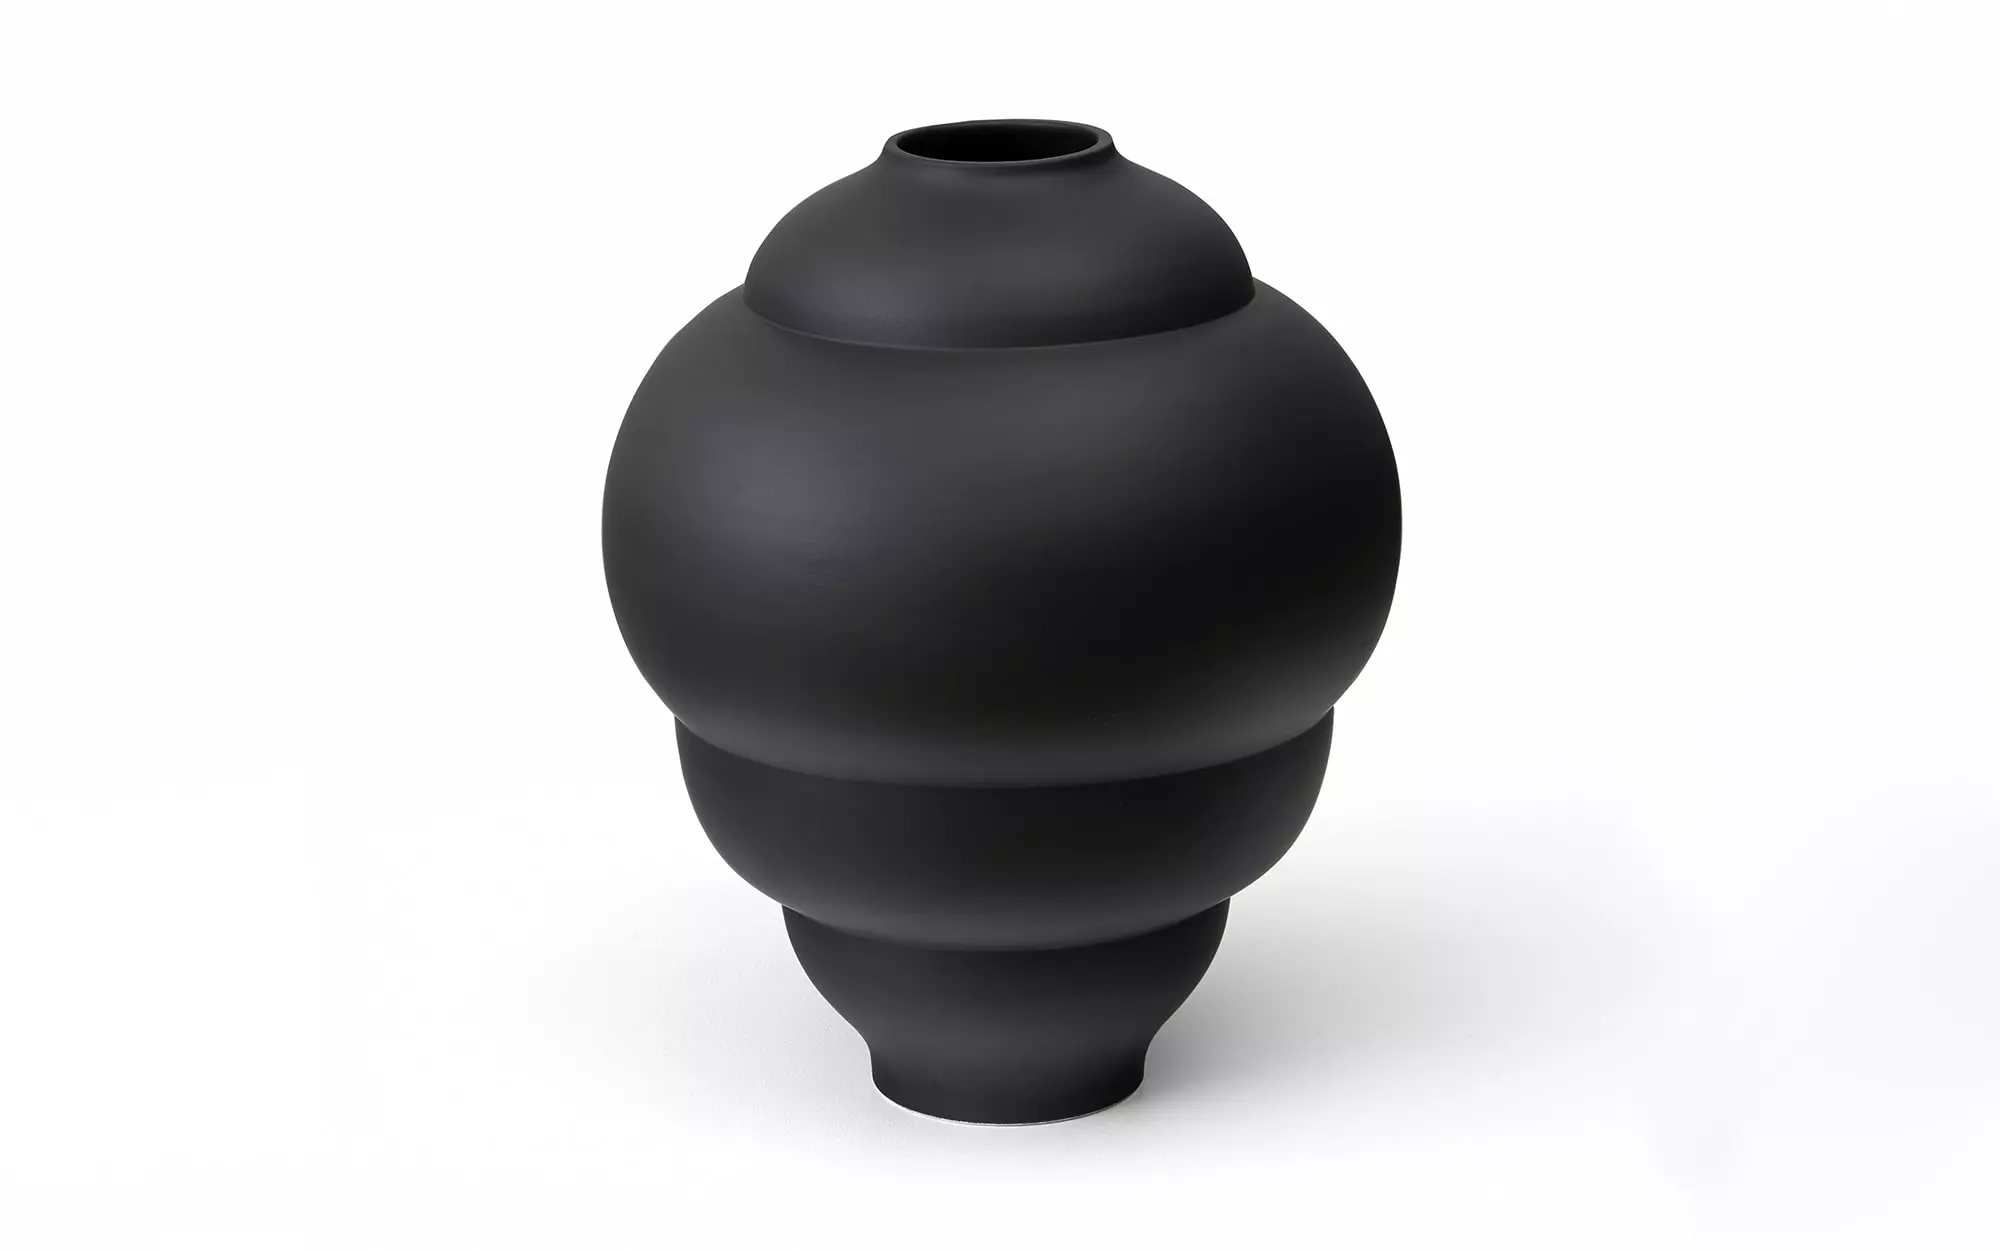 Plump - 3 Vase - Pierre Charpin - Chair - Galerie kreo